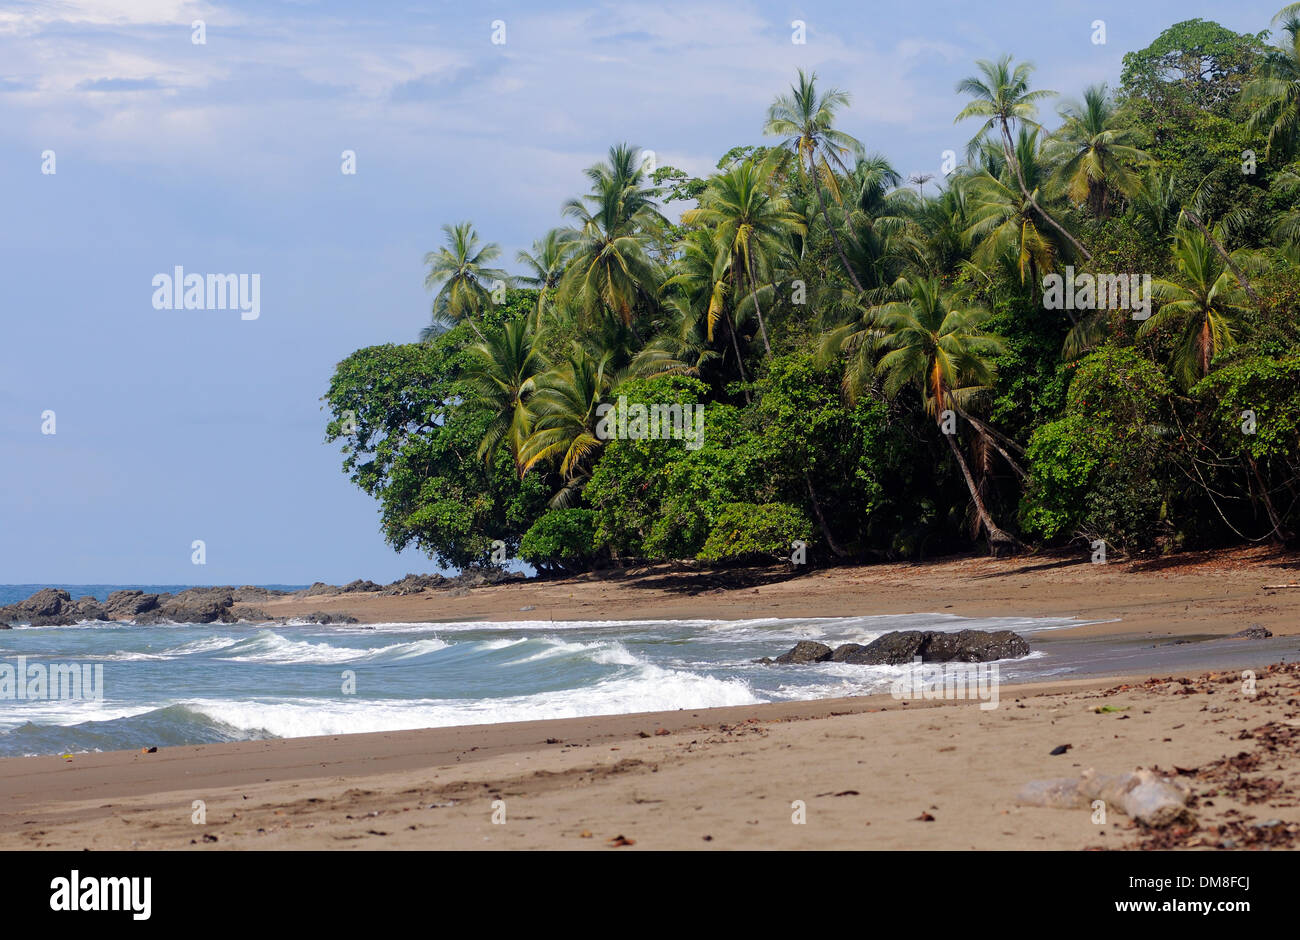 Spiaggia di sabbia con palme da cocco. Cano Island , Parco Nazionale di Corcovado, Golfito, Costa Rica. 27Nov13 Foto Stock